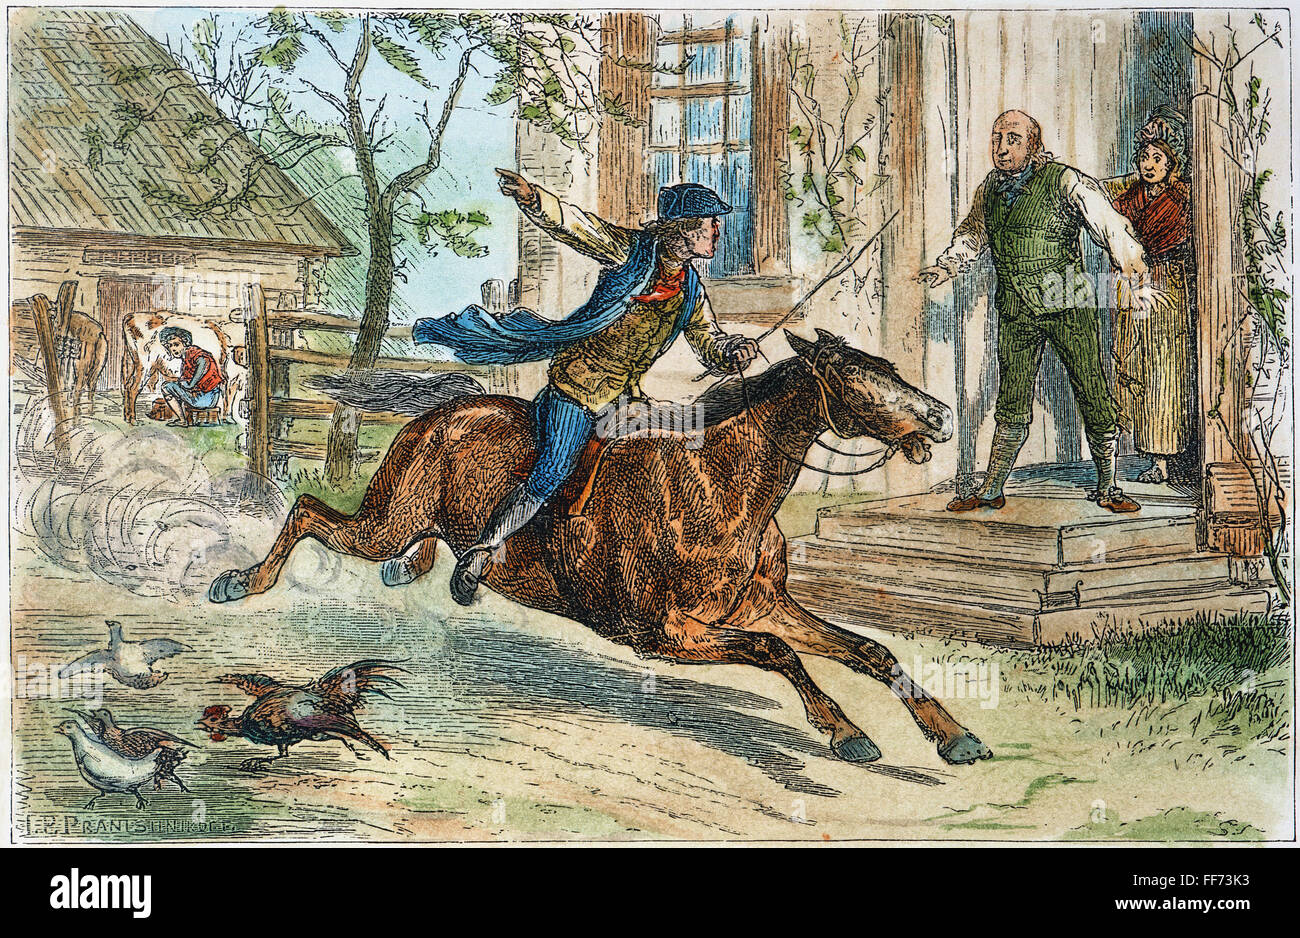 PAUL REVERE'S RIDE /nde Boston à Lexington, le 18 avril 1775. Gravure couleur, 19e siècle. Banque D'Images